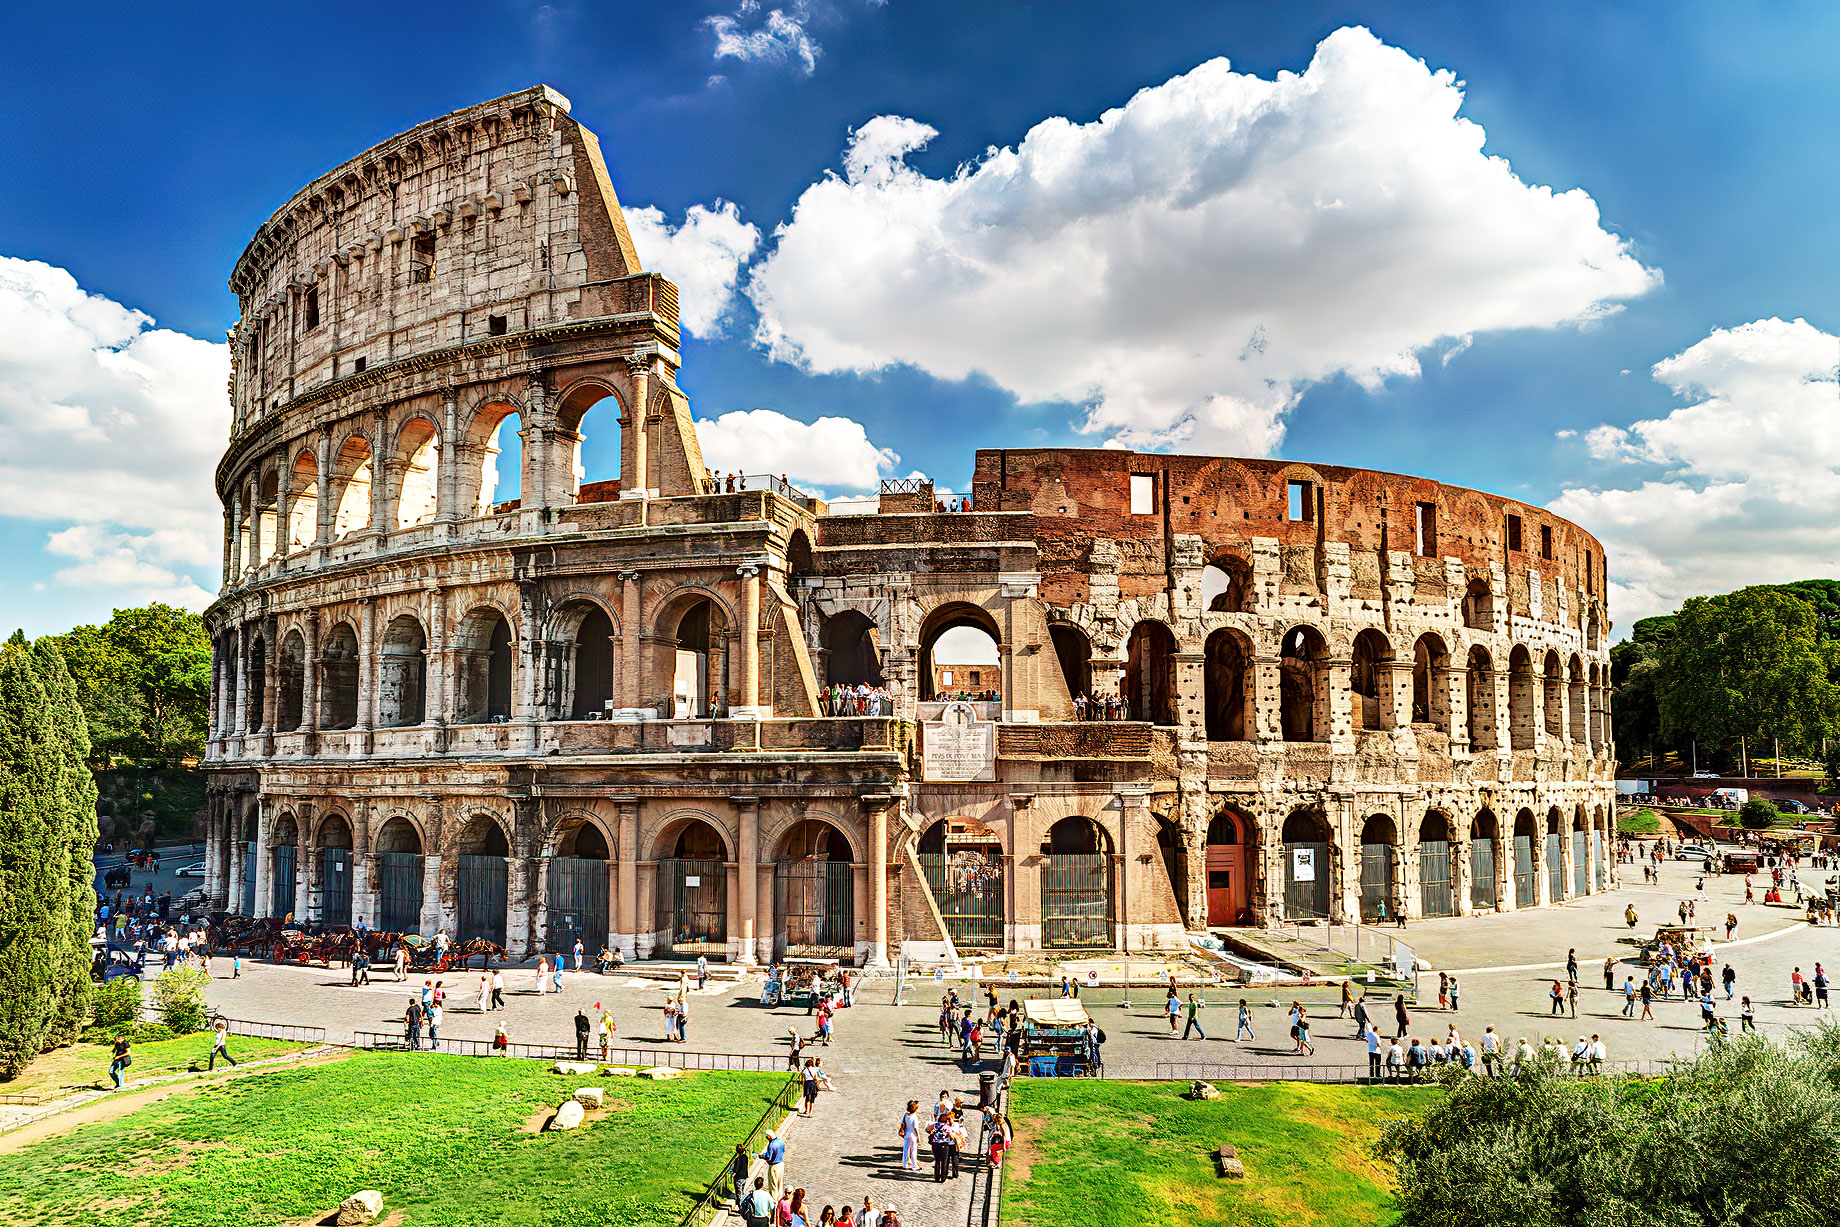 Roman Empire - Colosseum - Rome, Italy